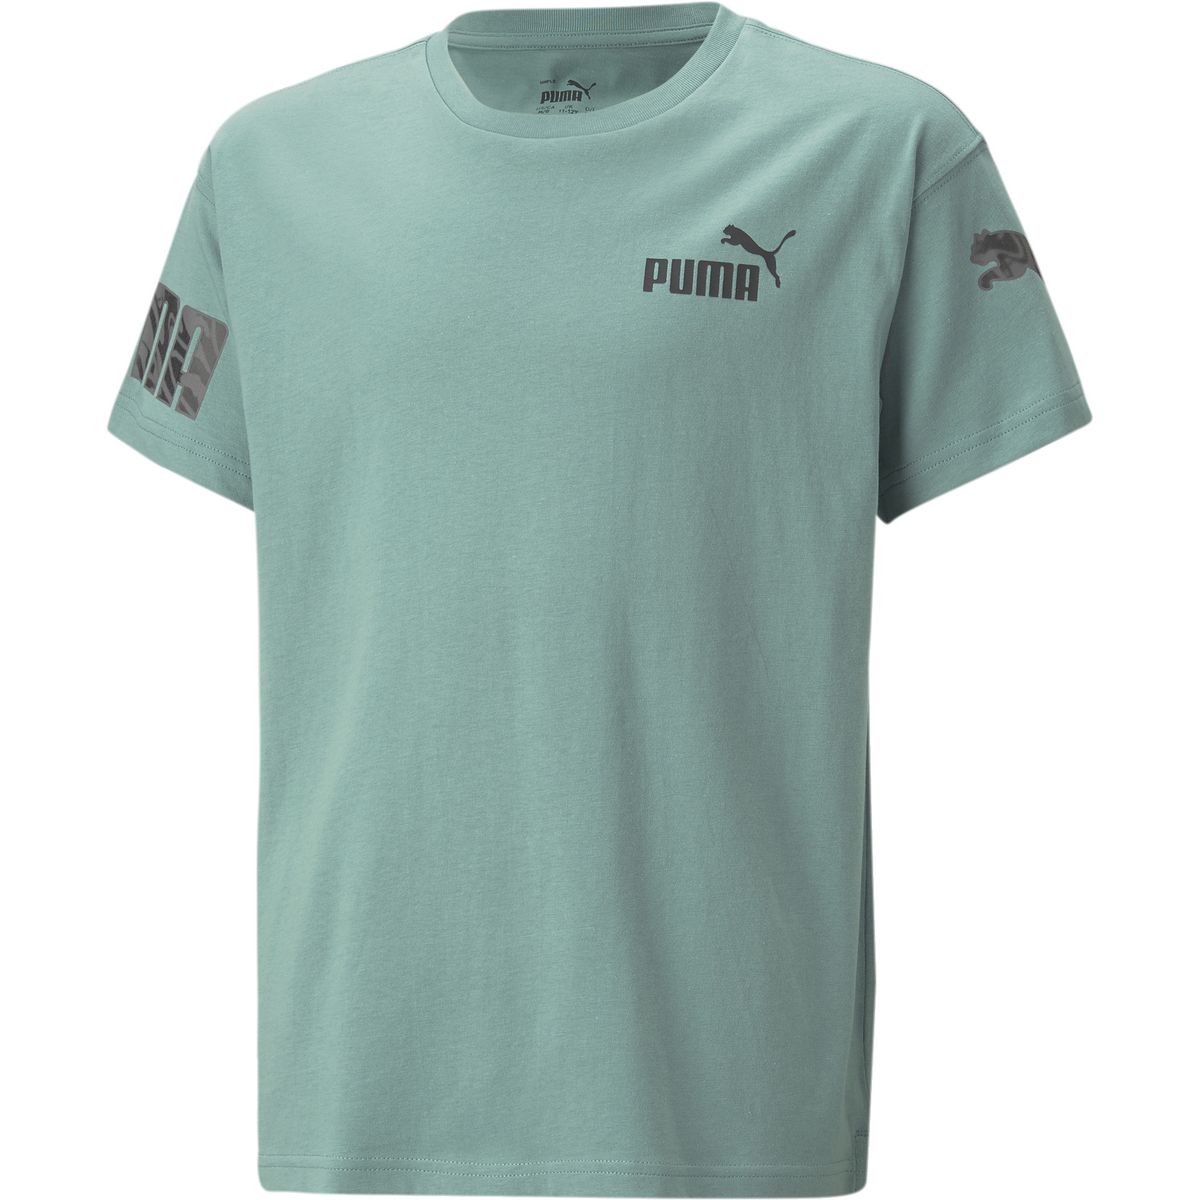 Puma Power Summer Jungen T-Shirt